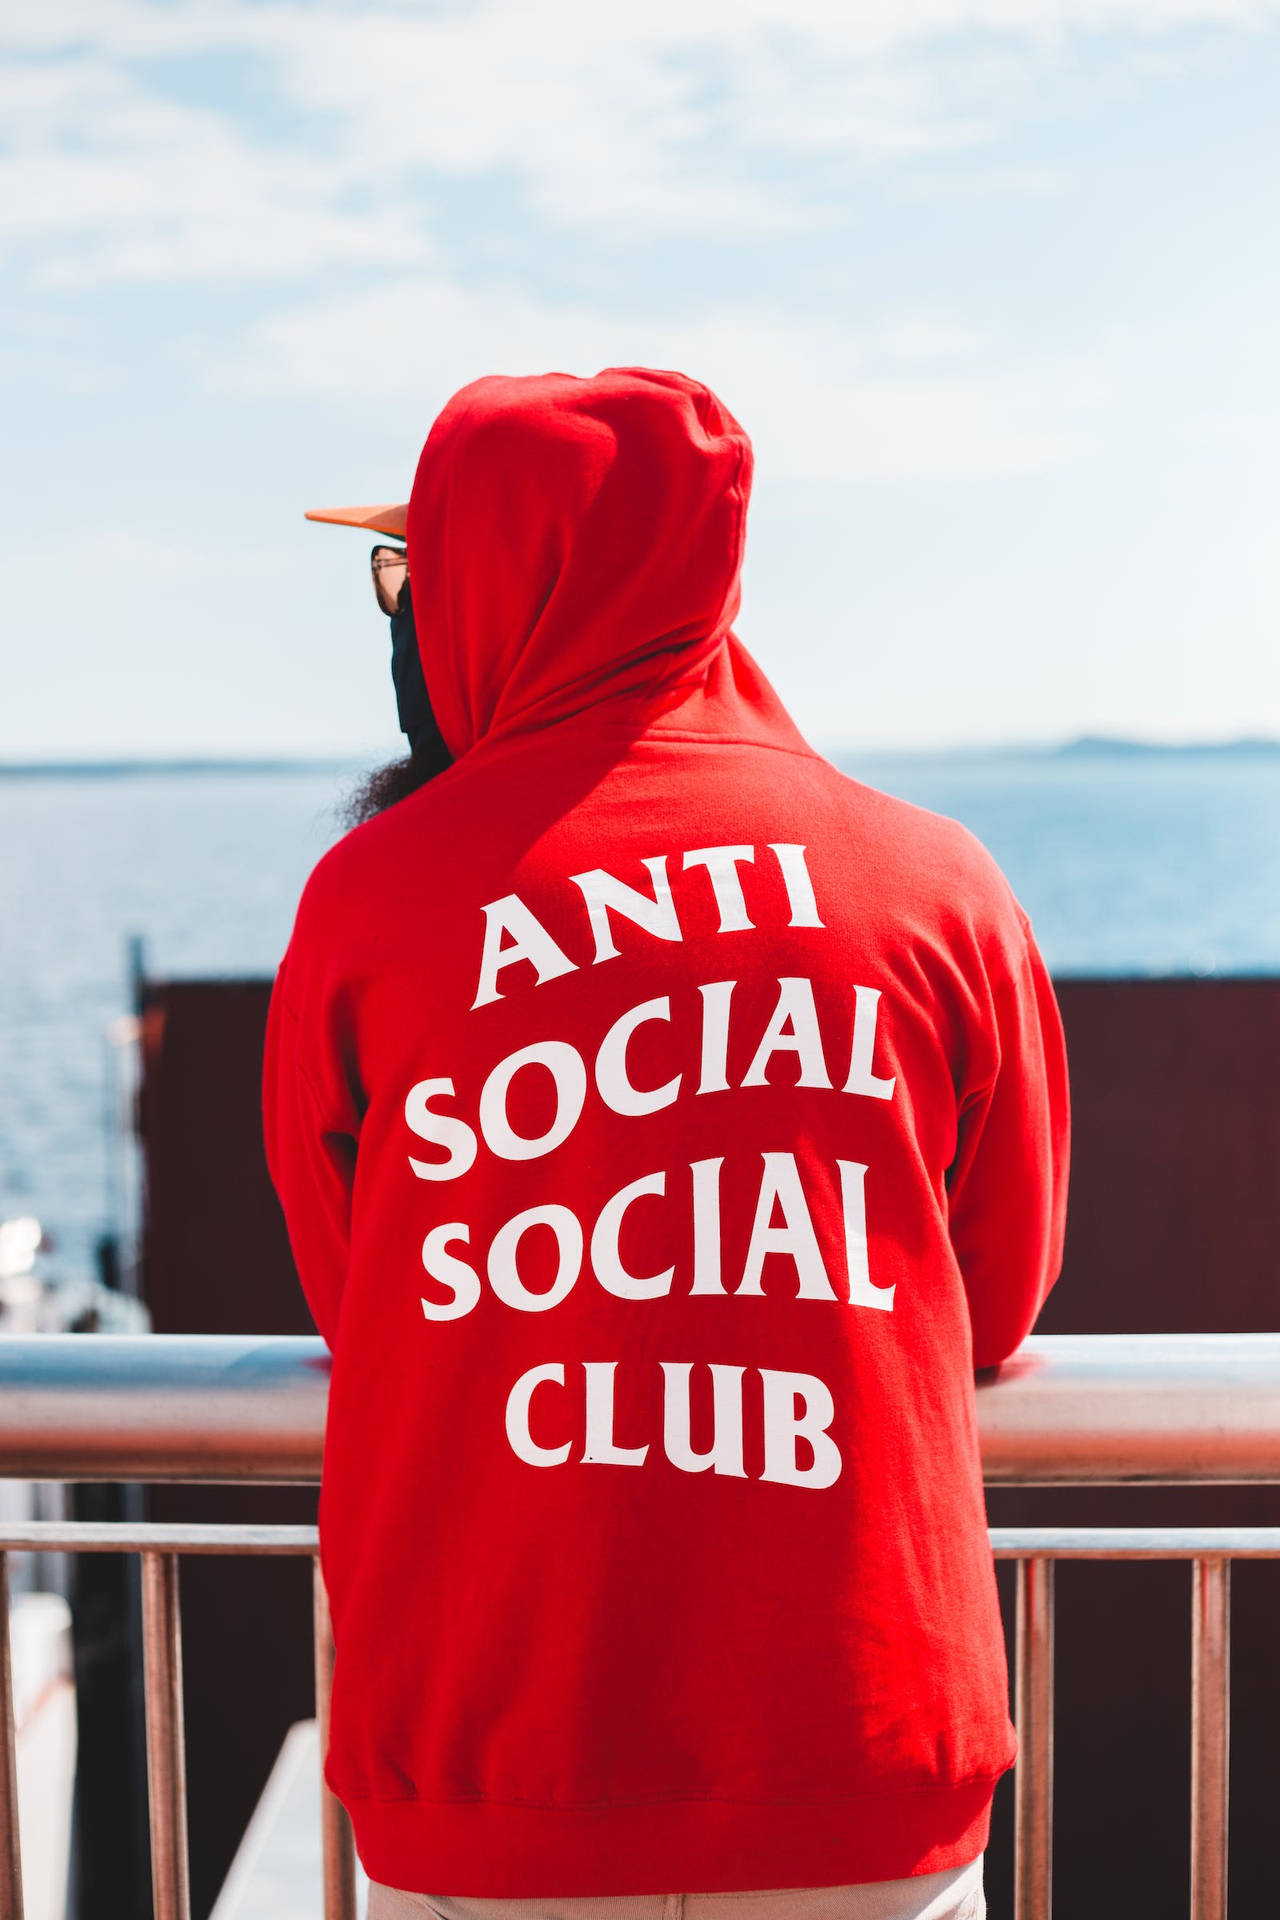 Download NiceAnti Social Social Club Wallpaper